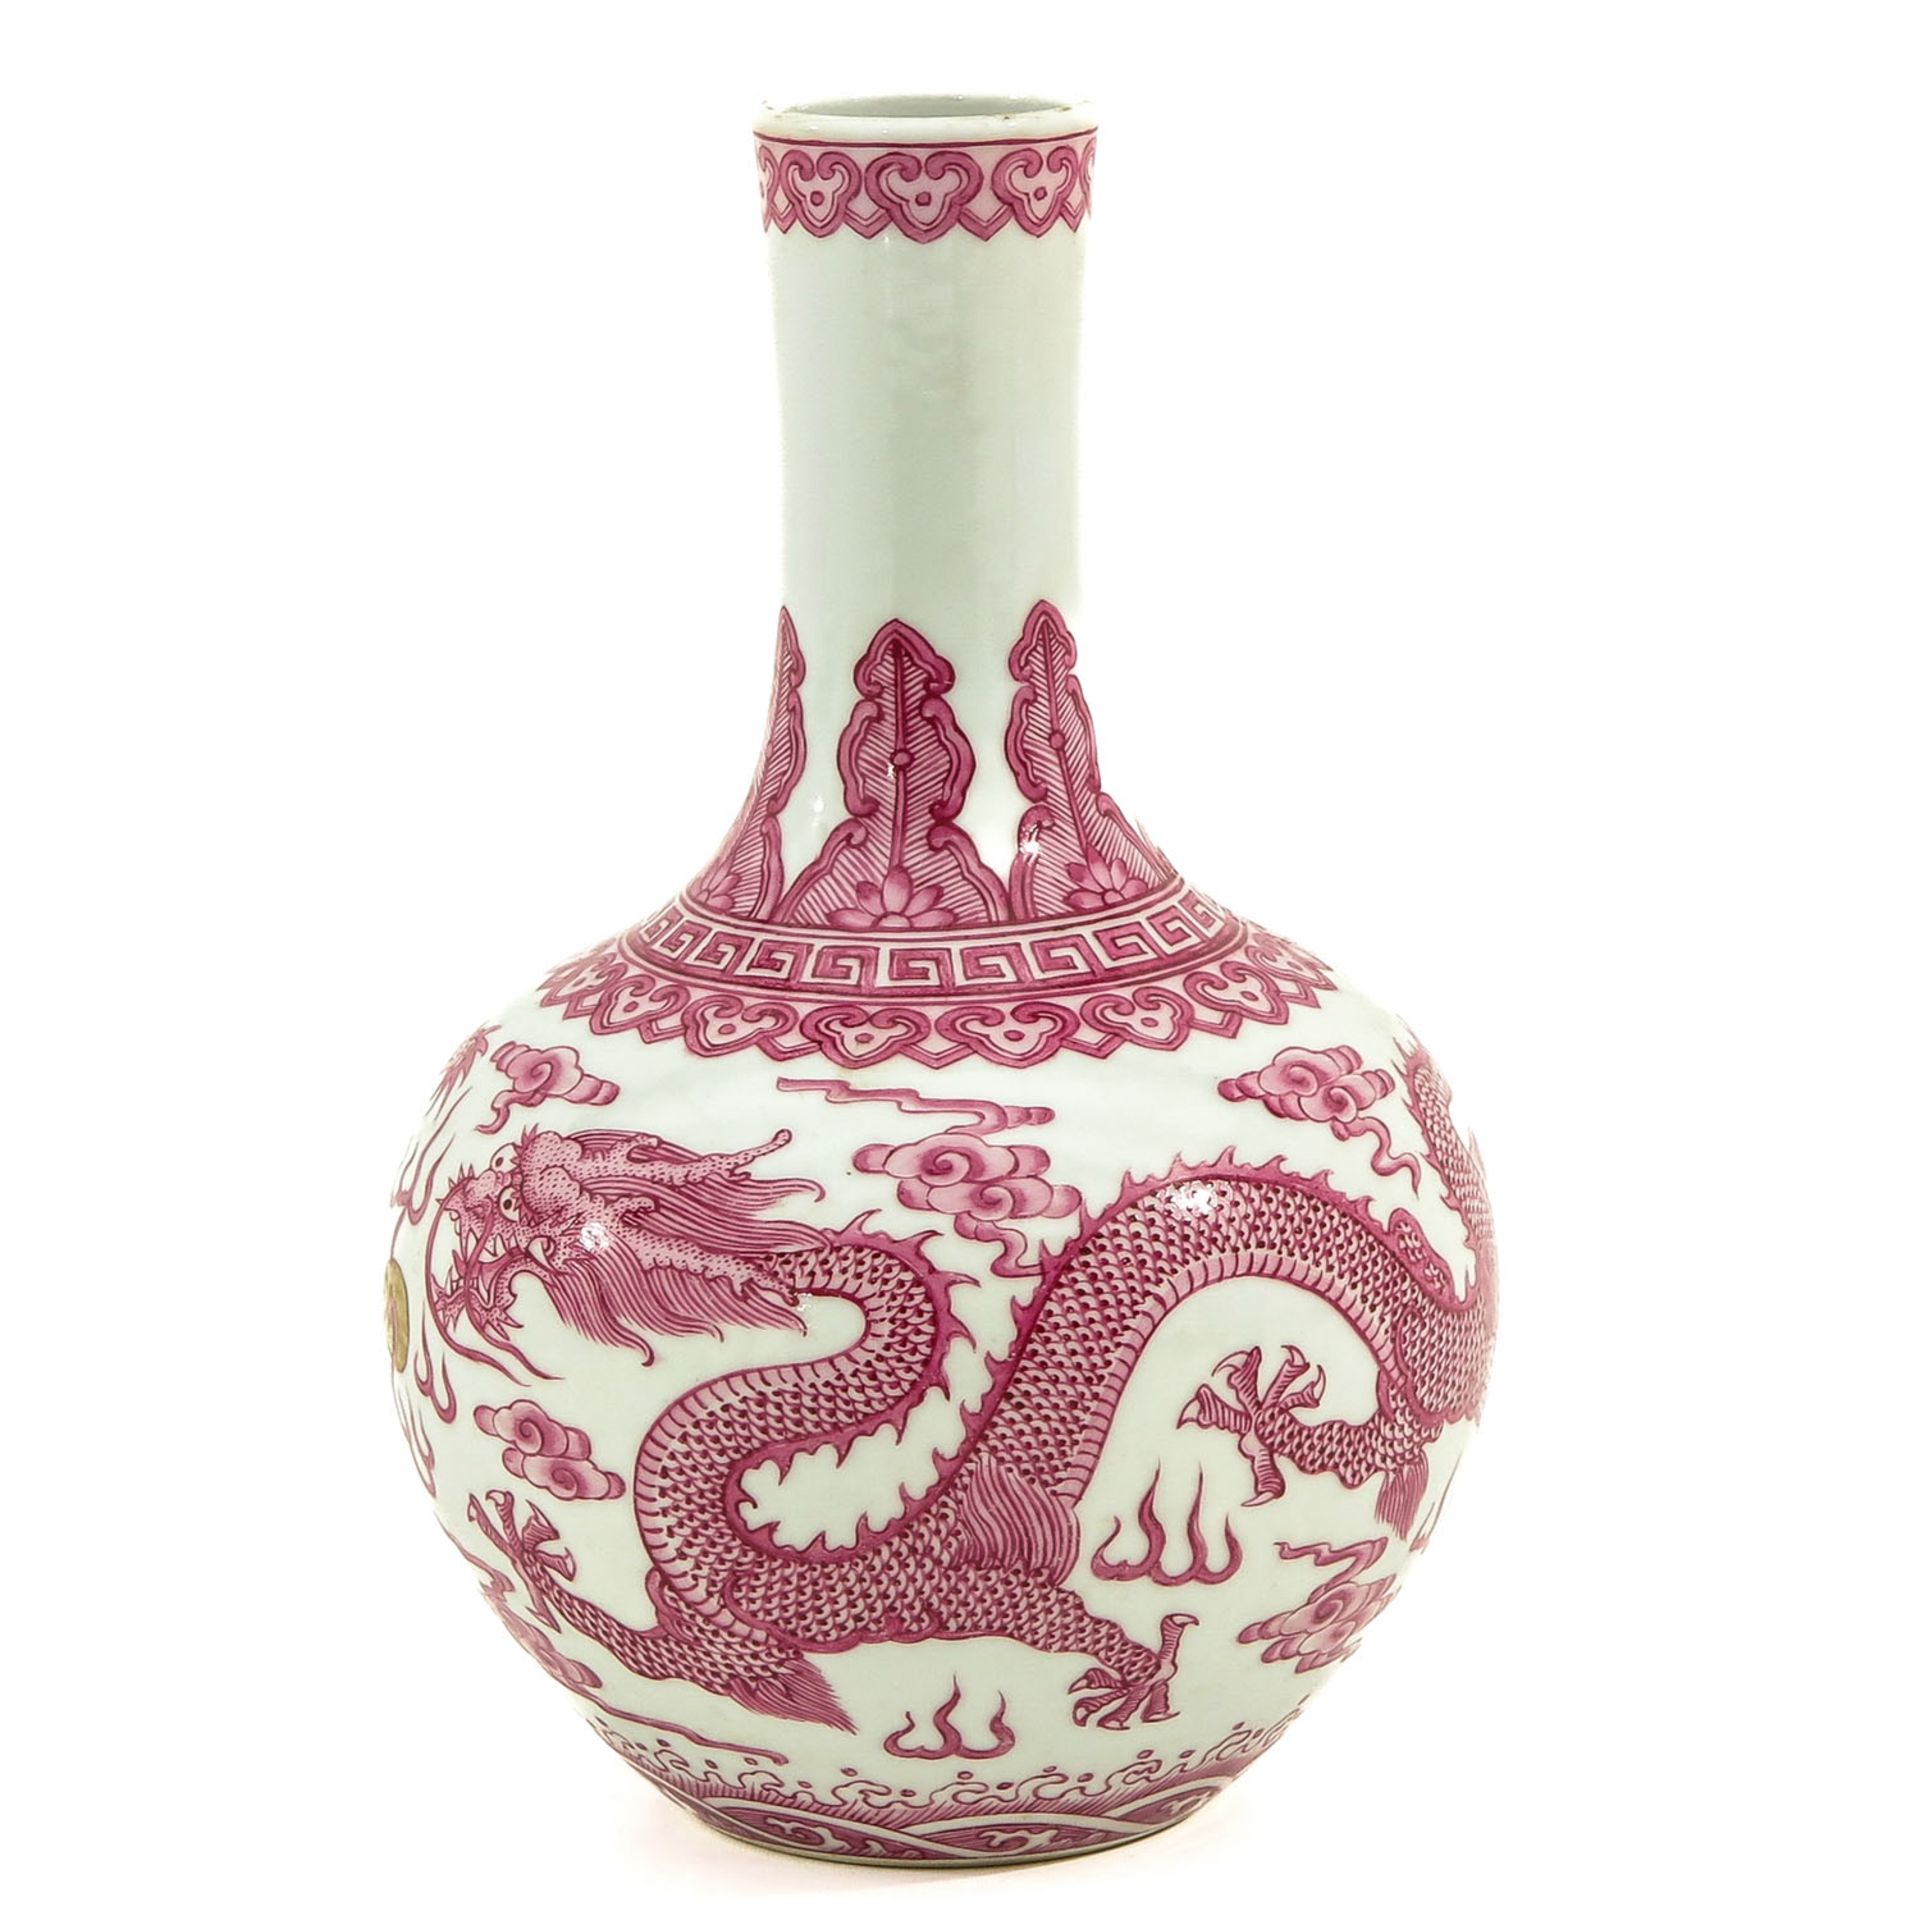 A Pink Decor Bottle Vase